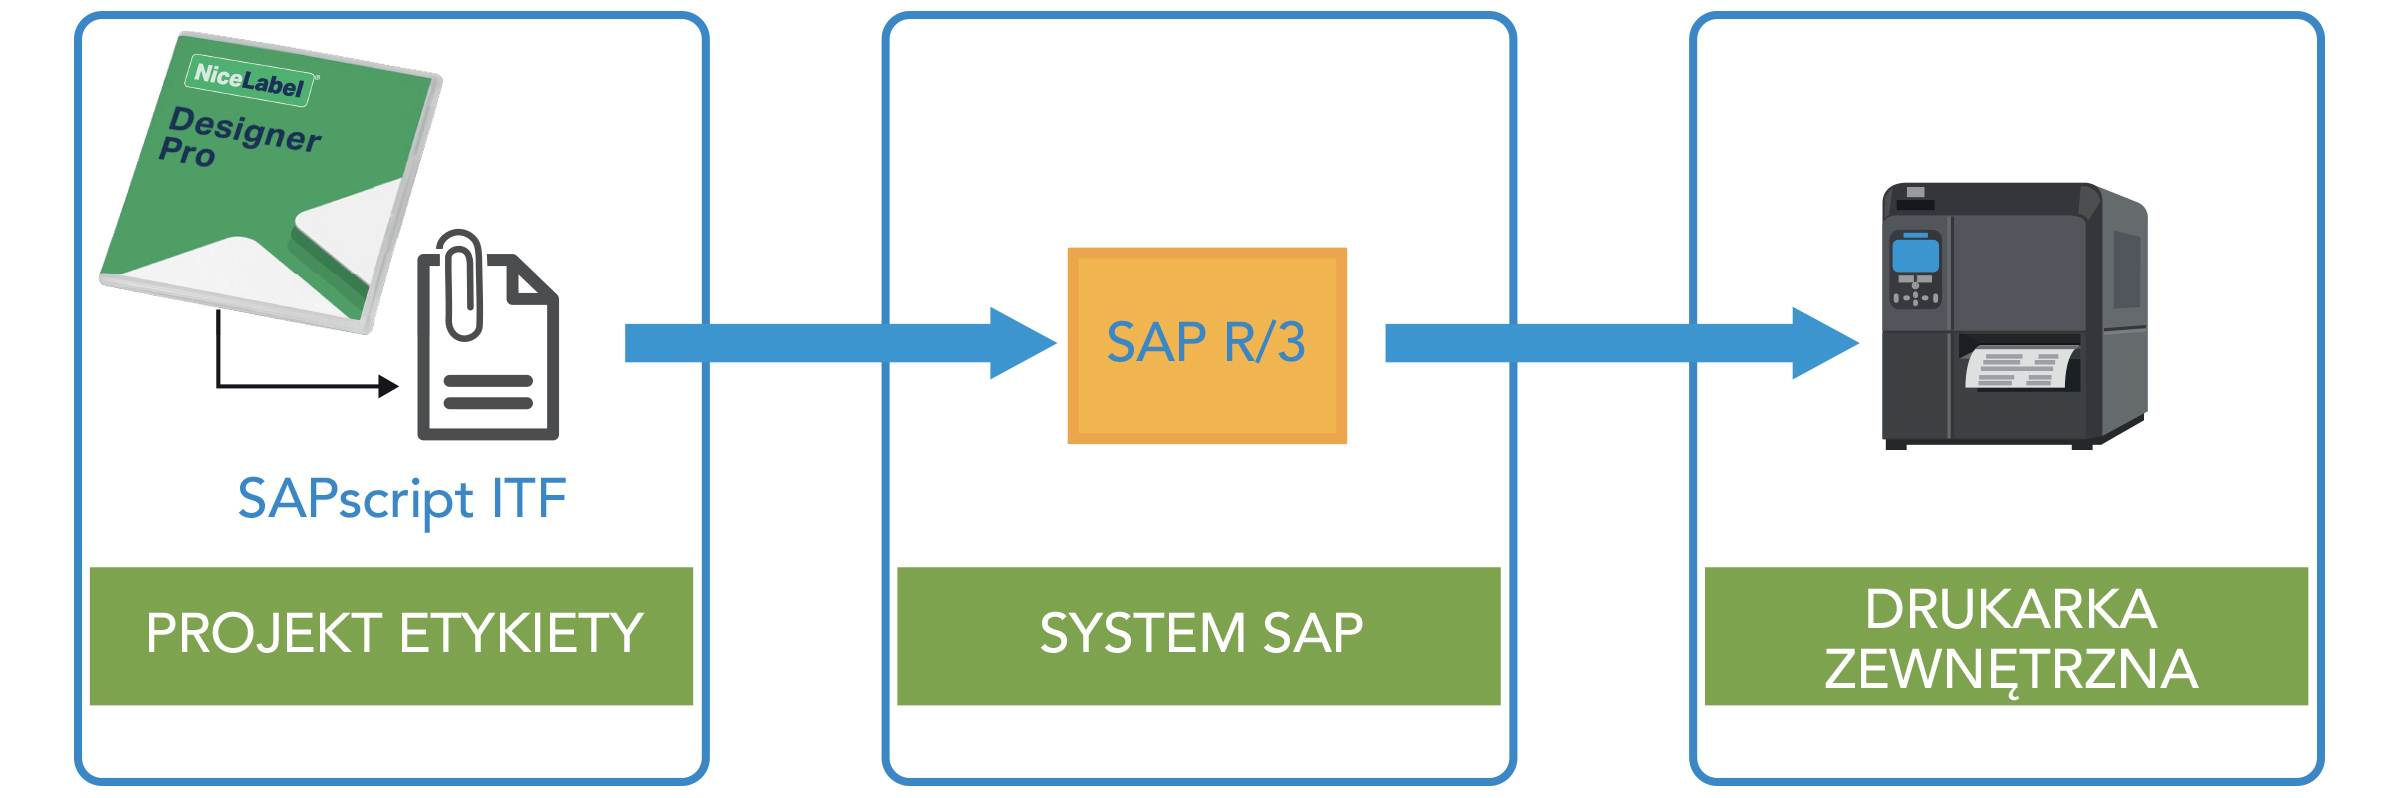 Projekt etykiety > System SAP > Urządzenia drukujące